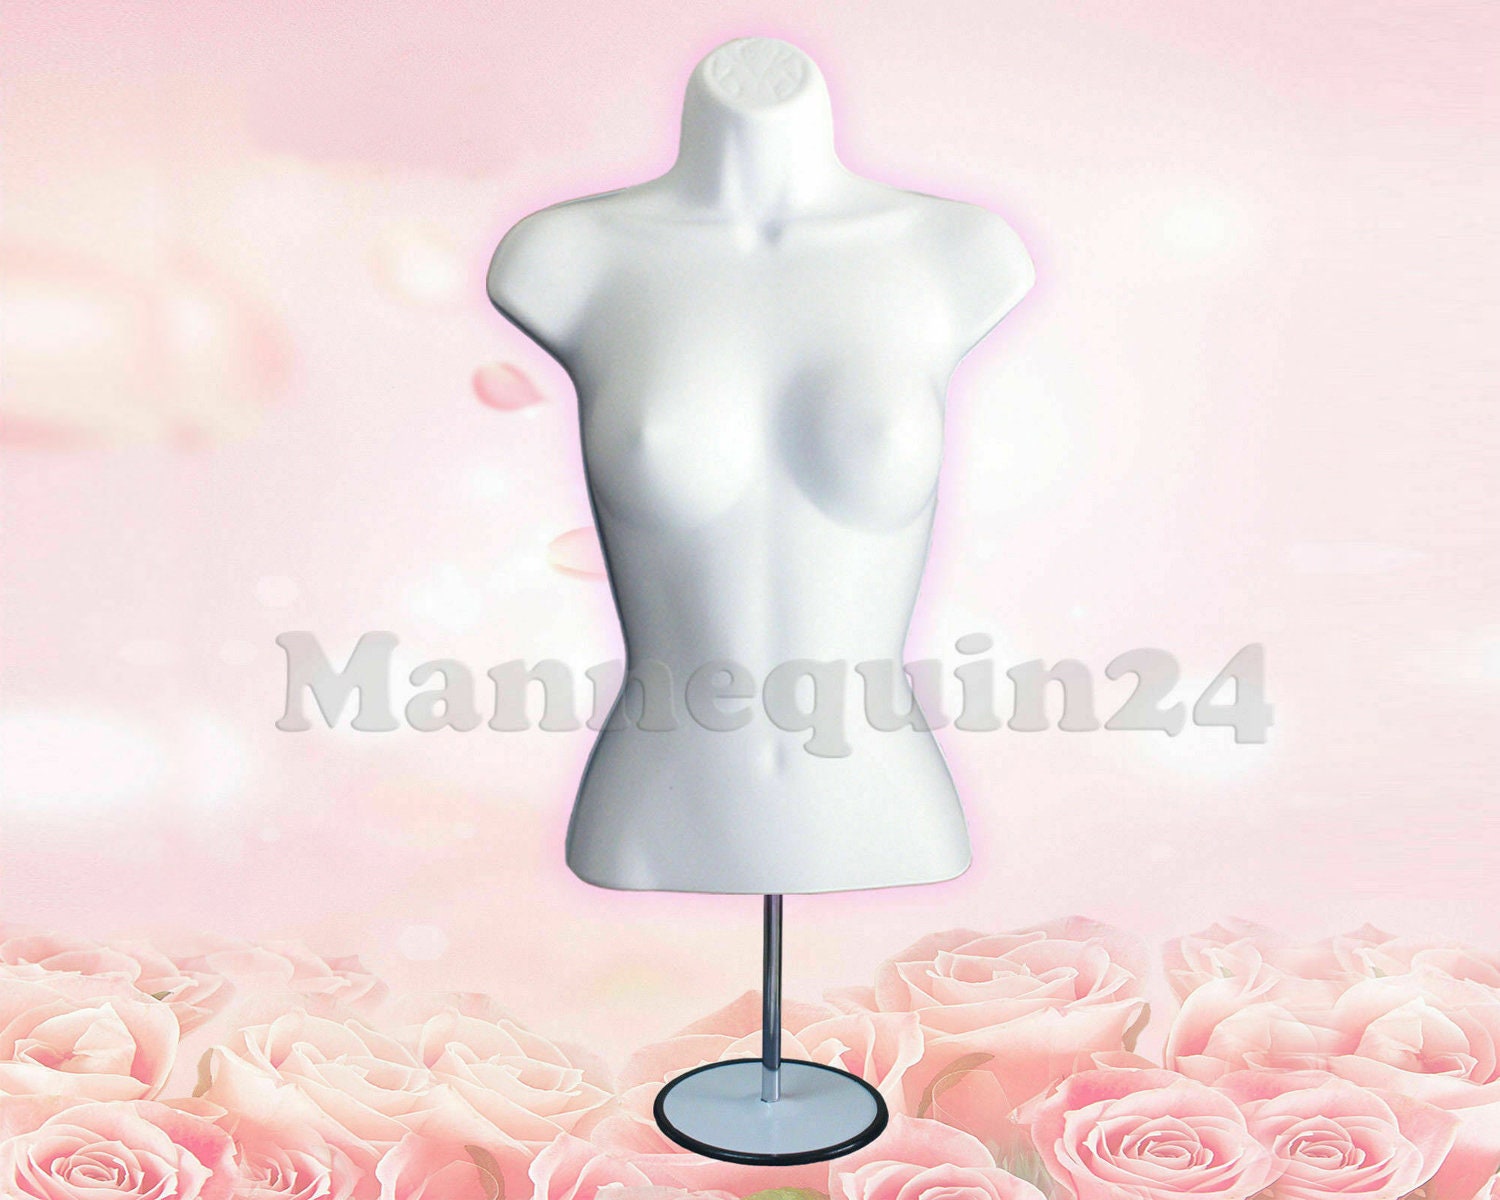  EDU1540221  Eddie's Female Dress Form - Cream Torso - Adjustable  H Wooden Base - Dressmaker Mannequin